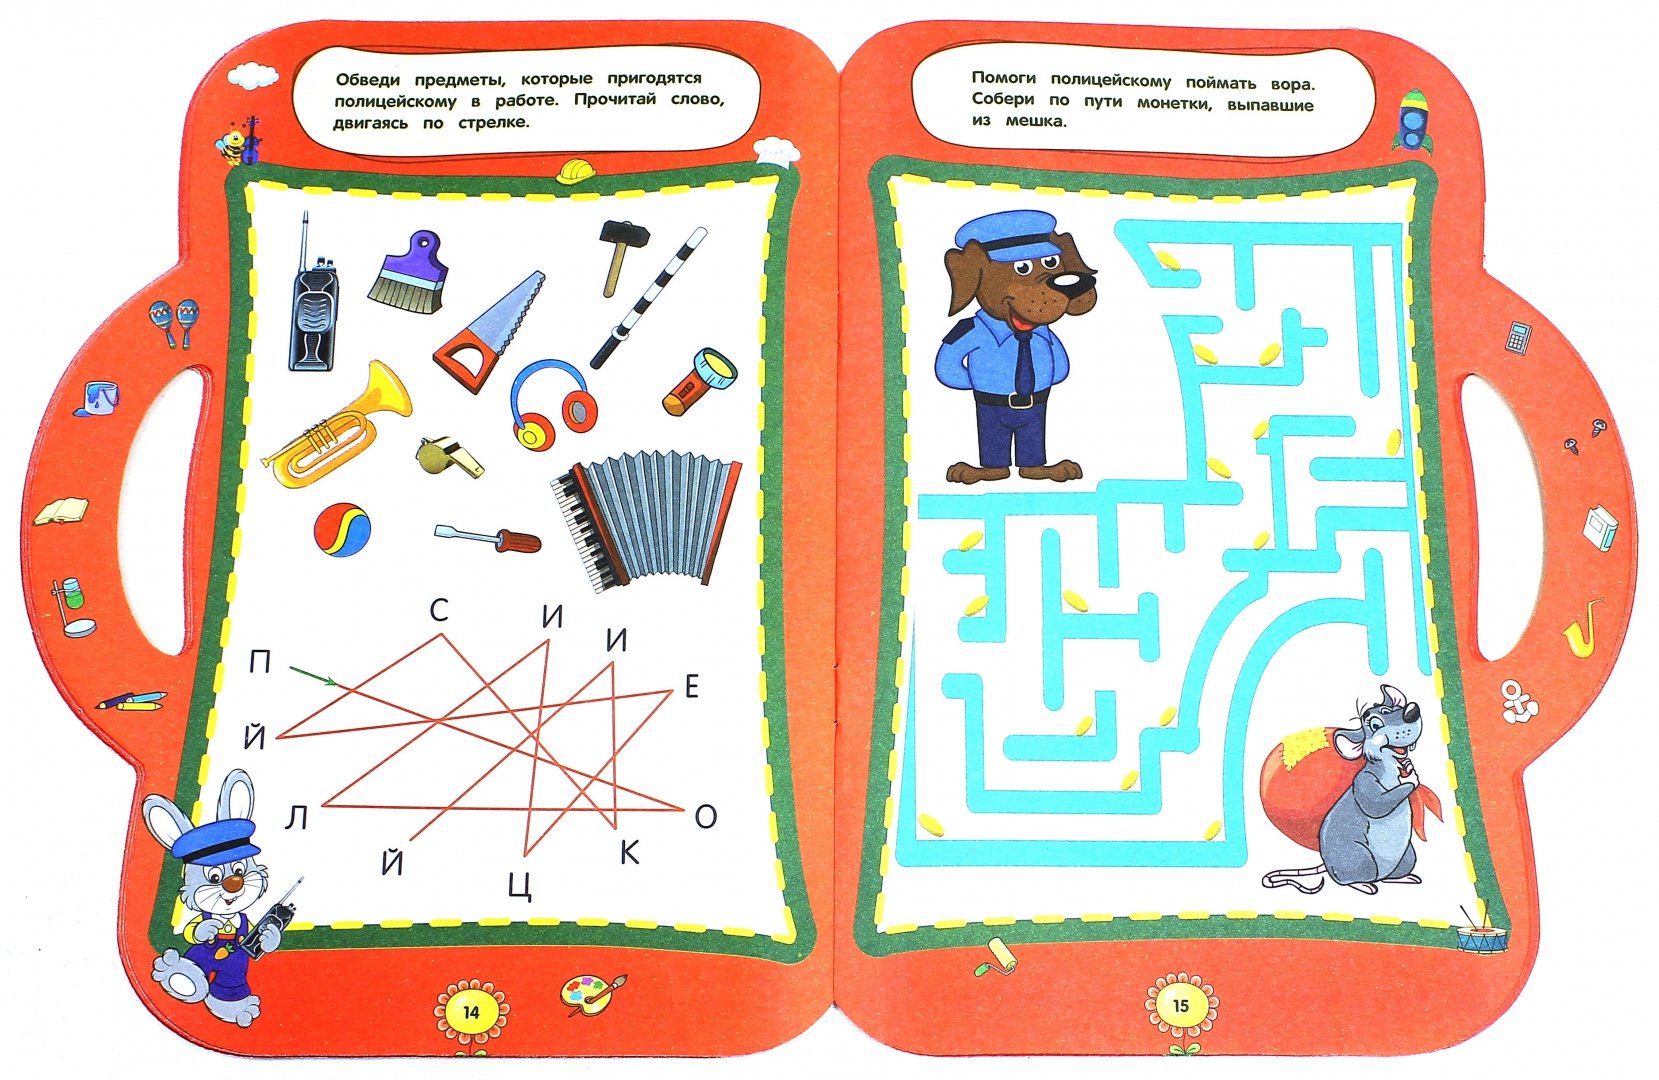 Развивающие игры составить. Интеллектуальные задания для детей. Развивающие игры для 6 лет. Развивающие книги для детей 6-7 лет. Интеллектуальные задания для детей 6-7 лет.